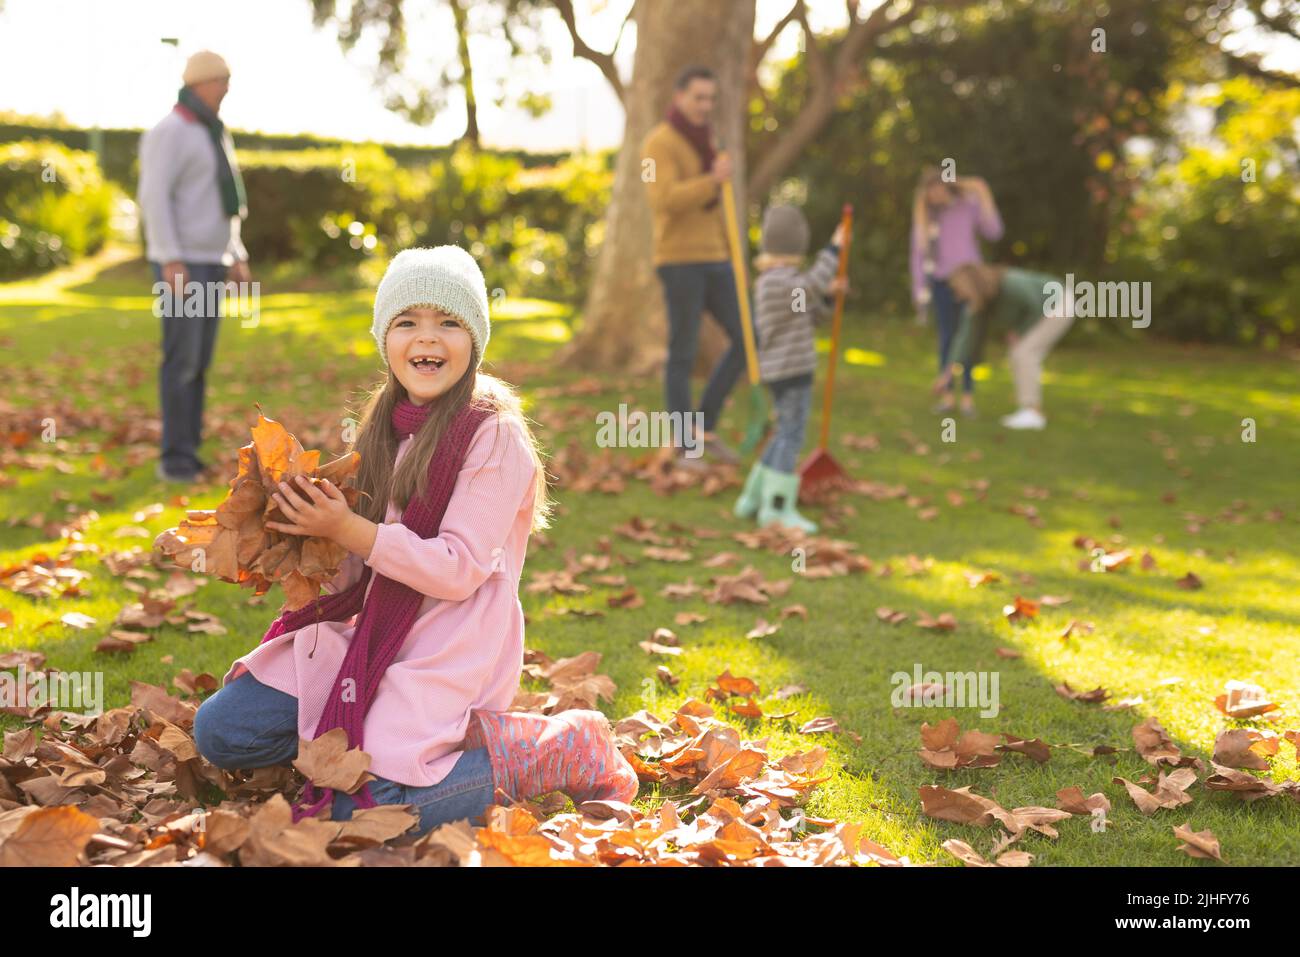 Bild eines glücklichen kaukasischen Mädchens, das im Garten mit Herbstblättern spielt Stockfoto